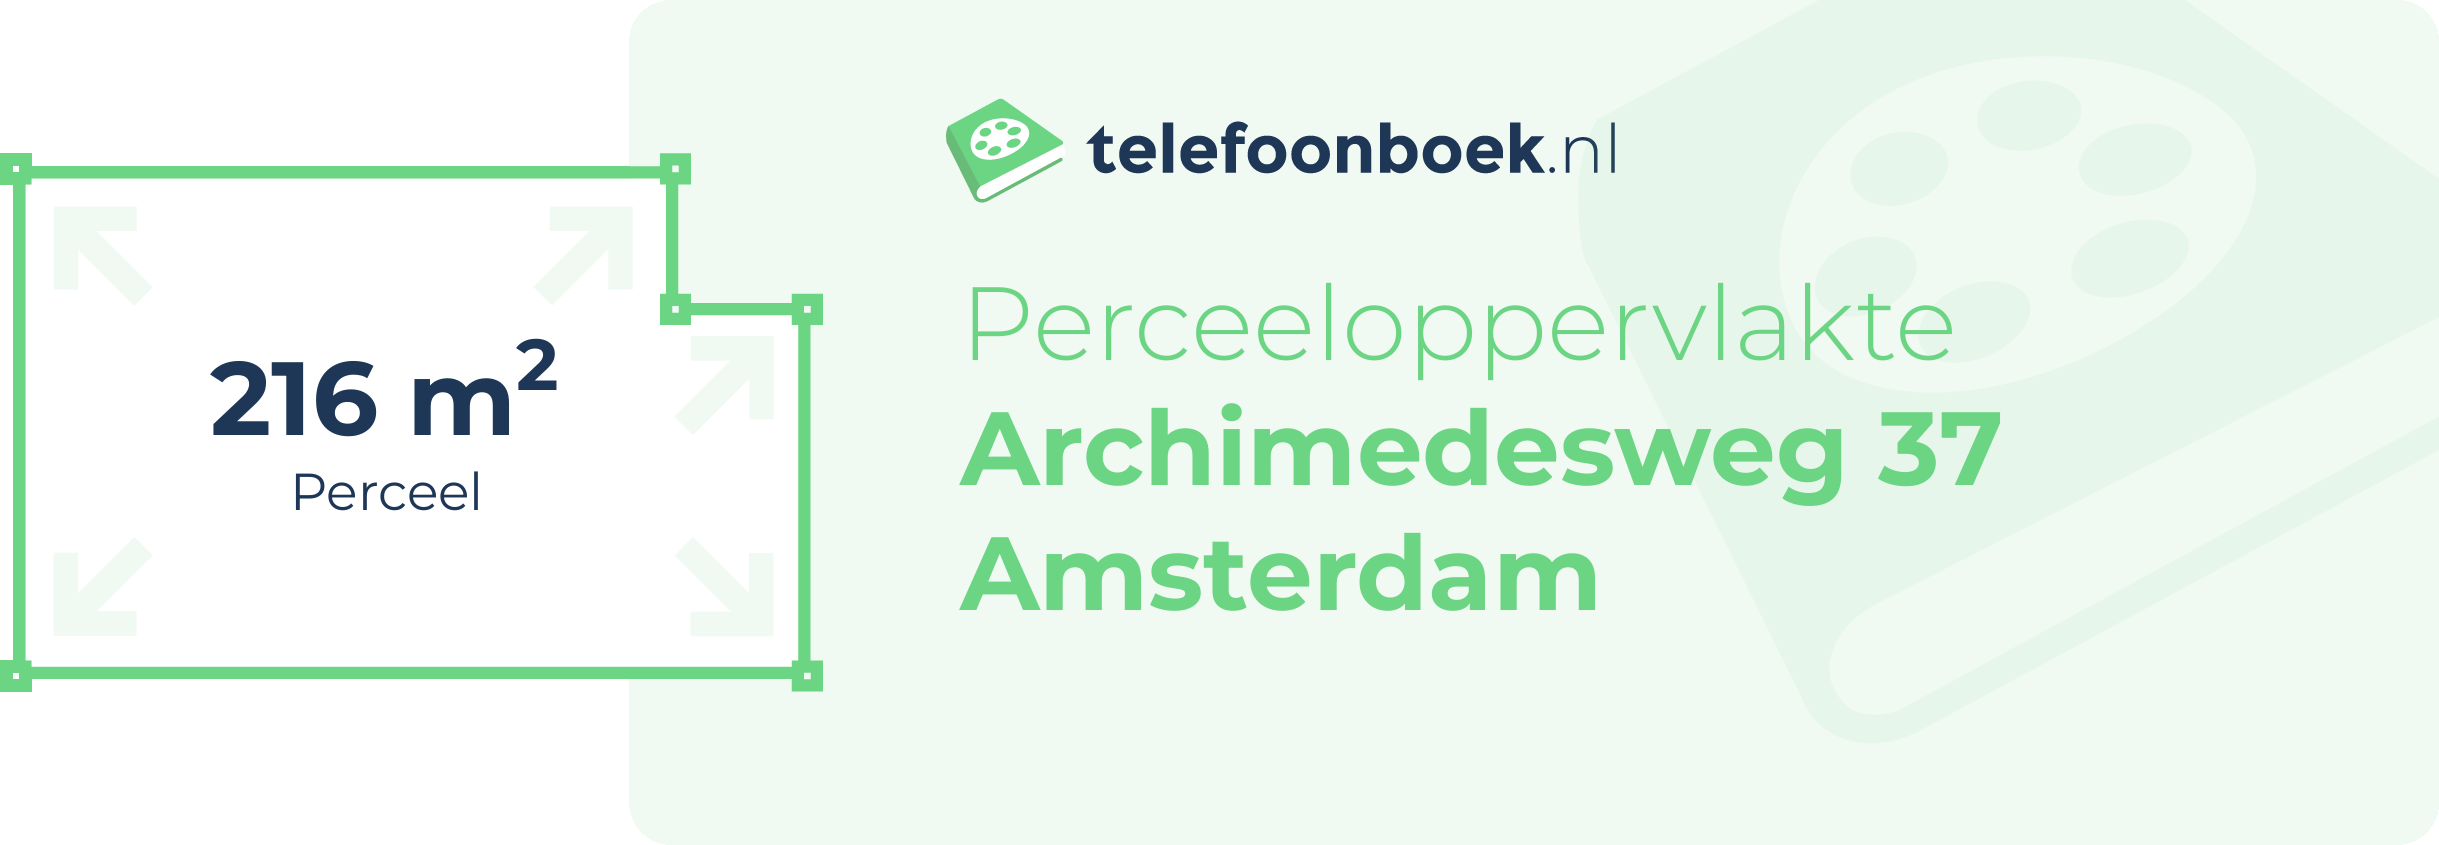 Perceeloppervlakte Archimedesweg 37 Amsterdam